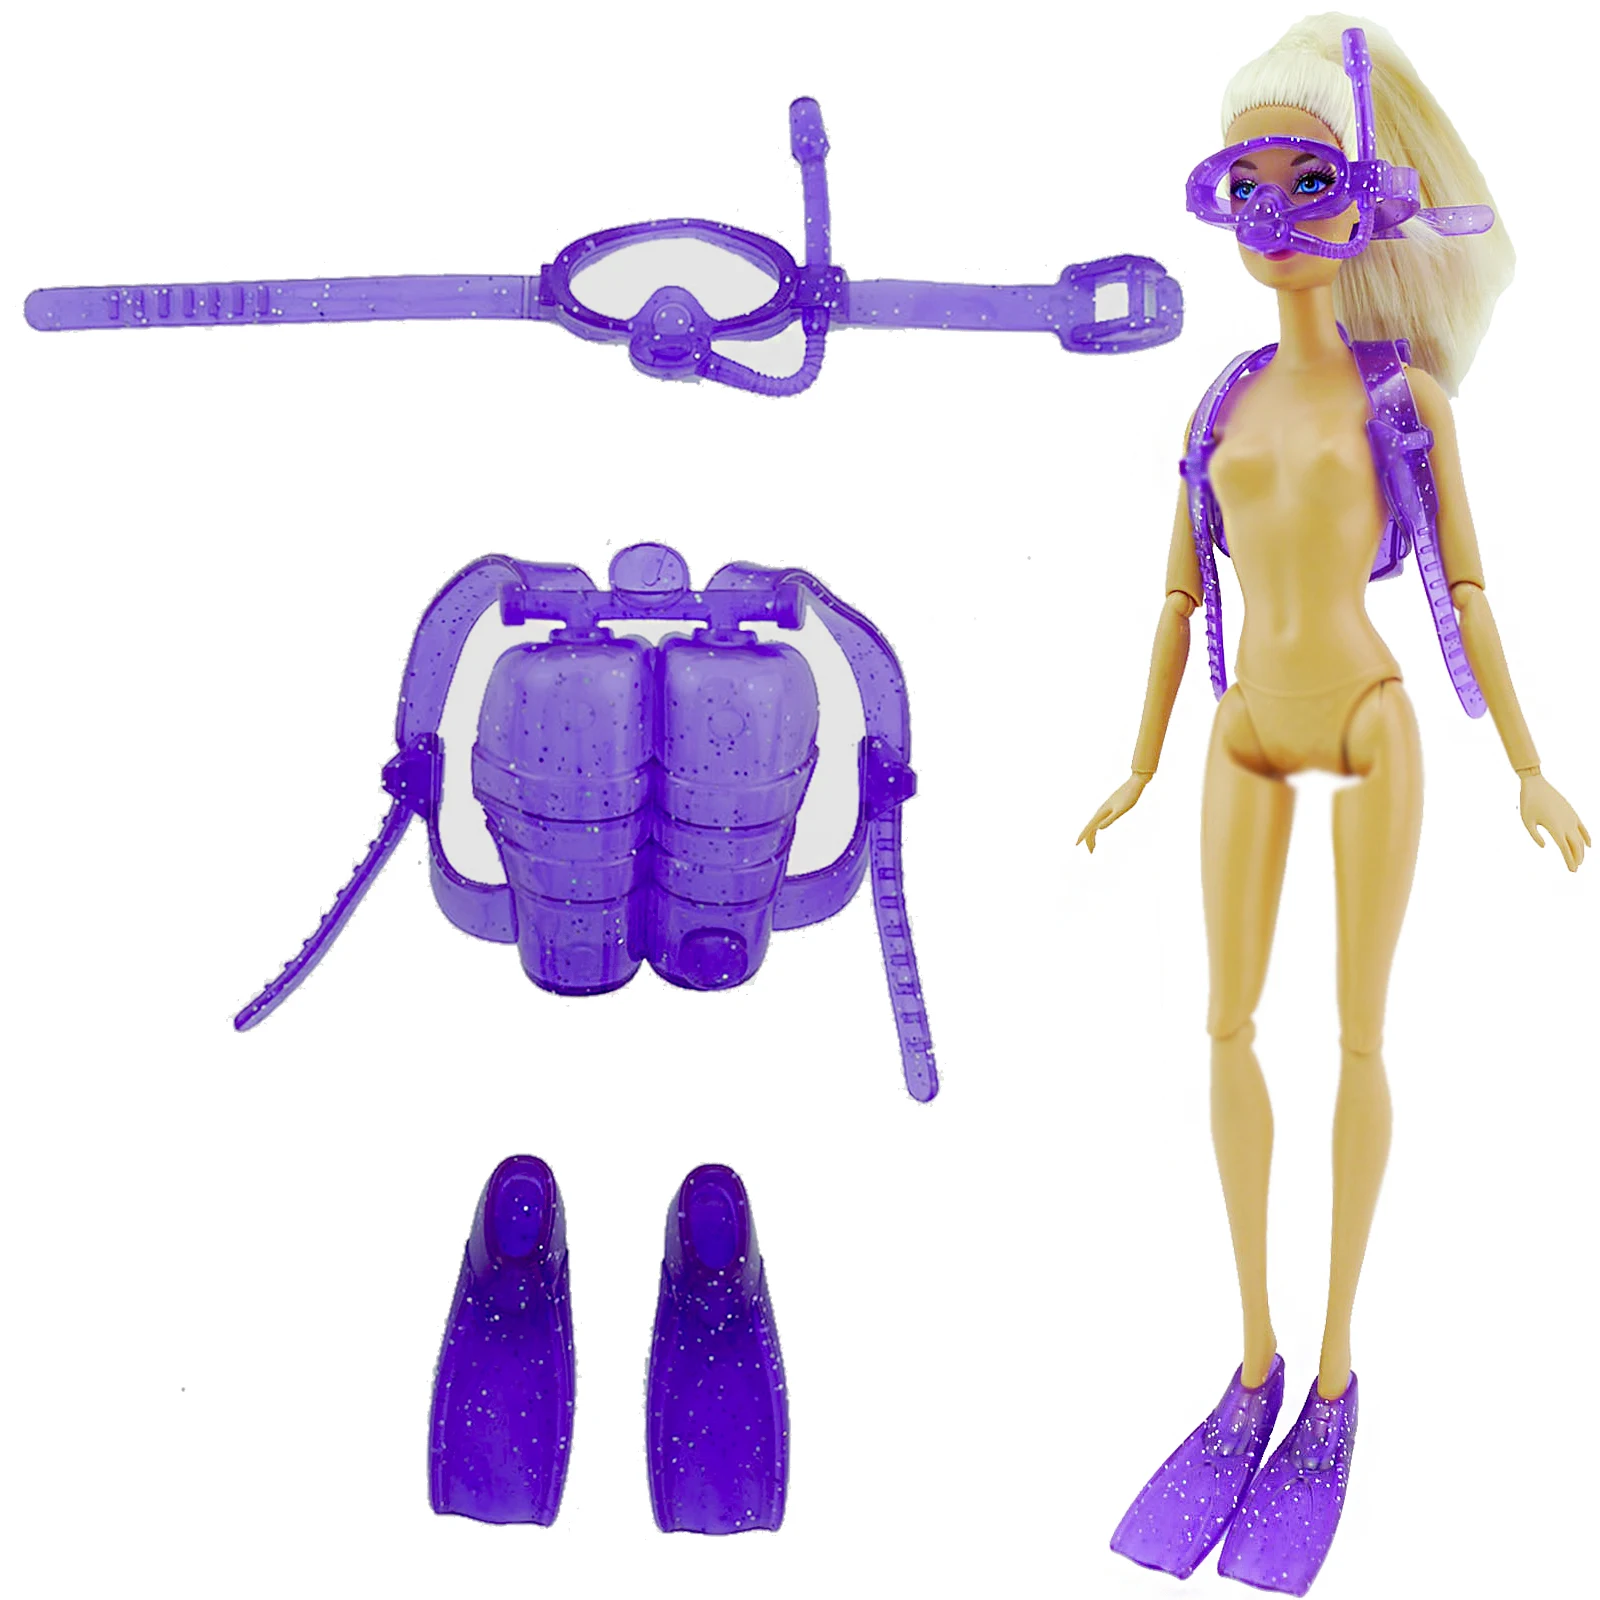 Аксессуары для кукол, фиолетовый пляжный купальный костюм, оборудование для подводного плавания, кислородный резервуар, ласты, очки для плавания, куклы Барби, одежда, игрушка